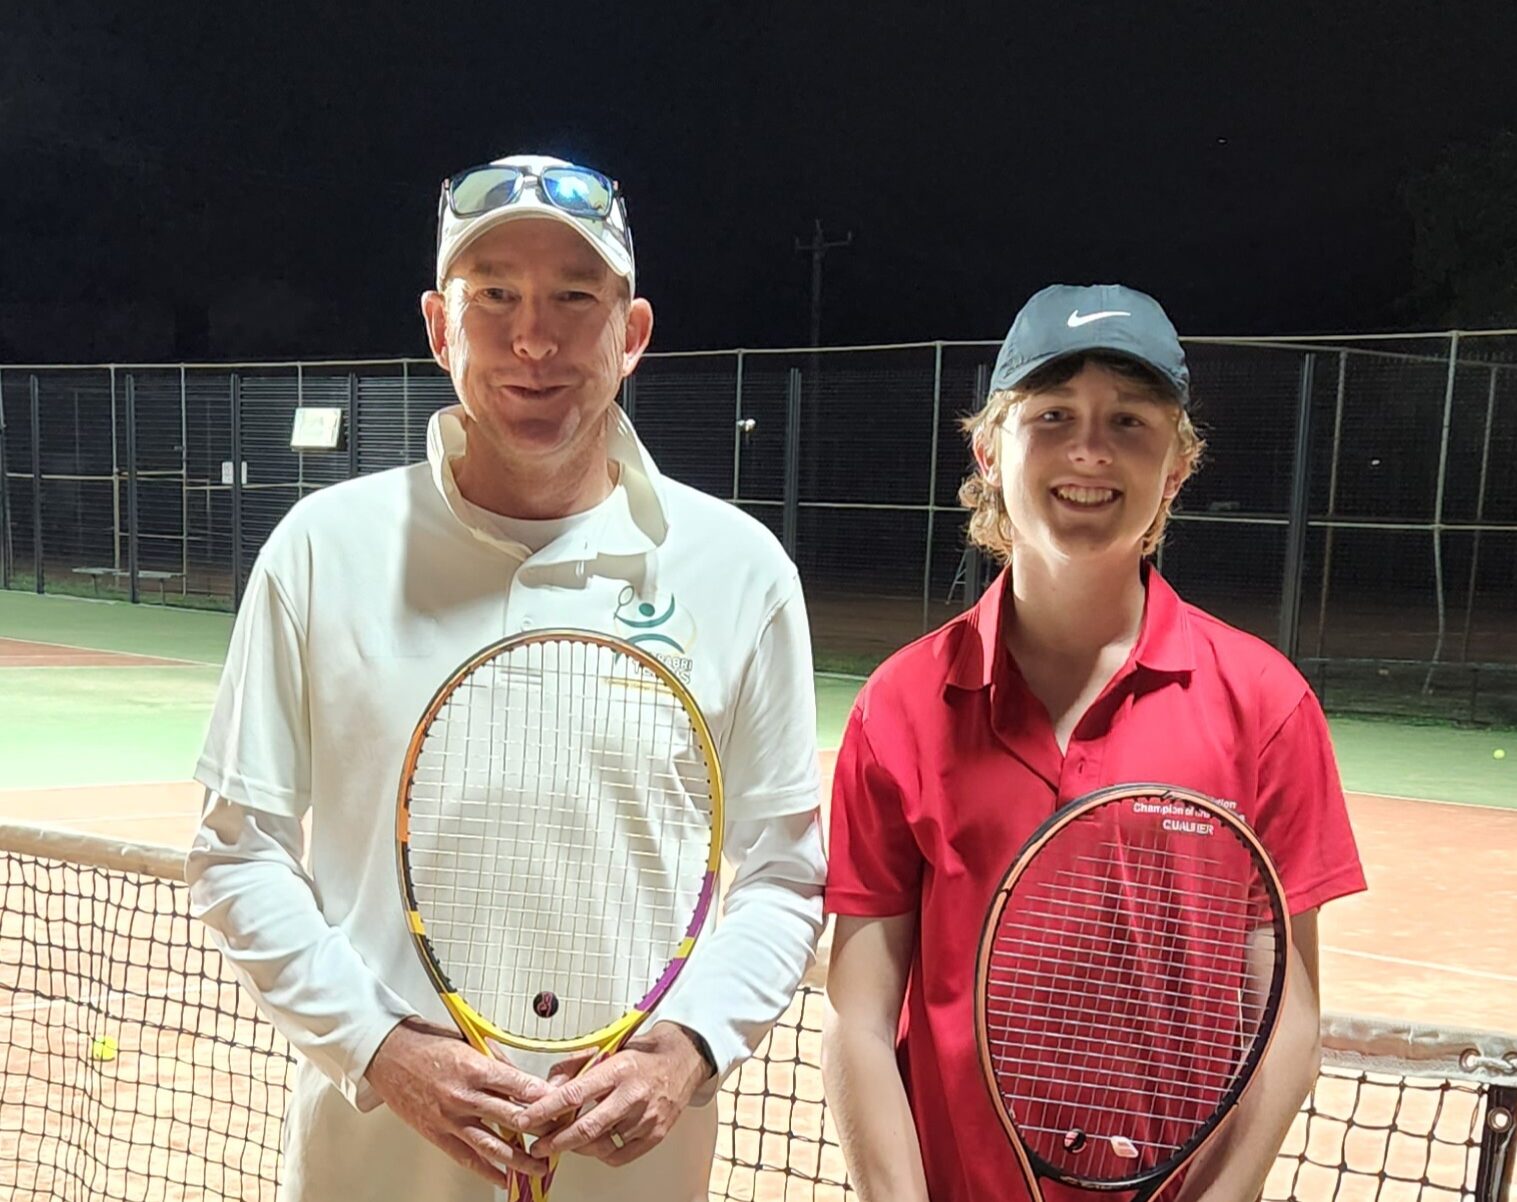 Jack Hartnett a future tennis leader in NSW